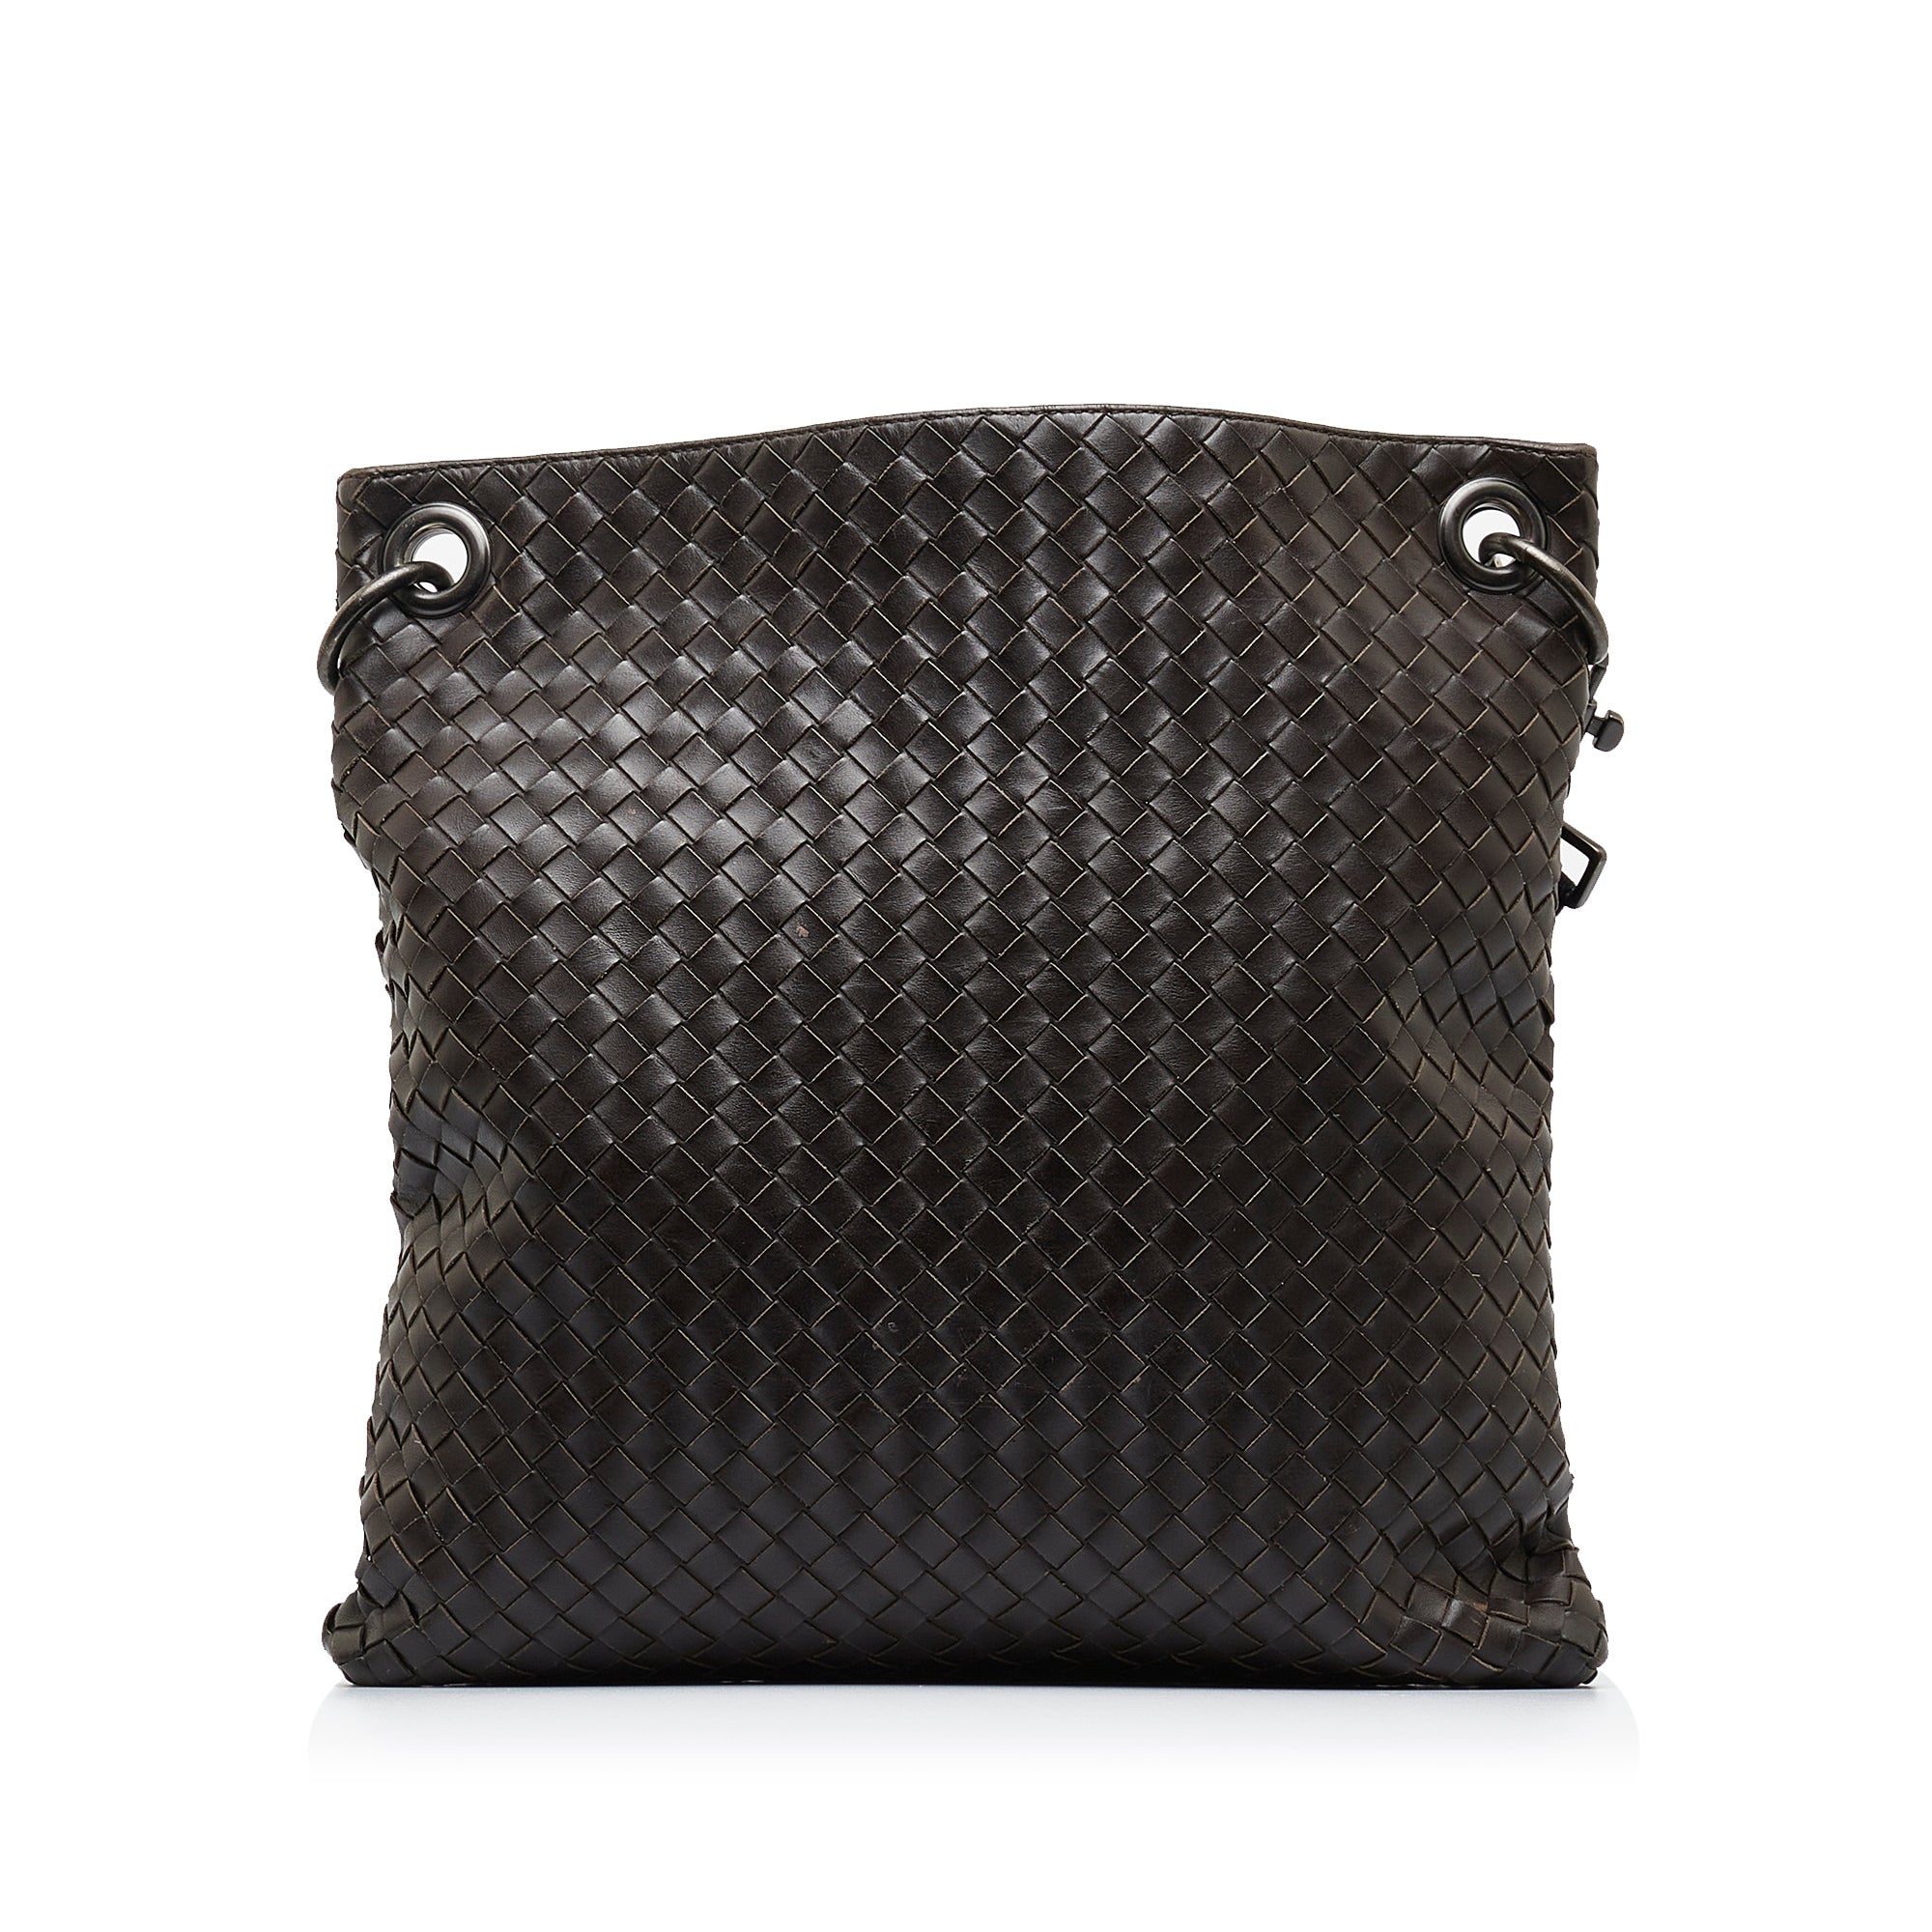 Brown Bottega Veneta Intrecciato Leather Crossbody Bag, RvceShops Revival